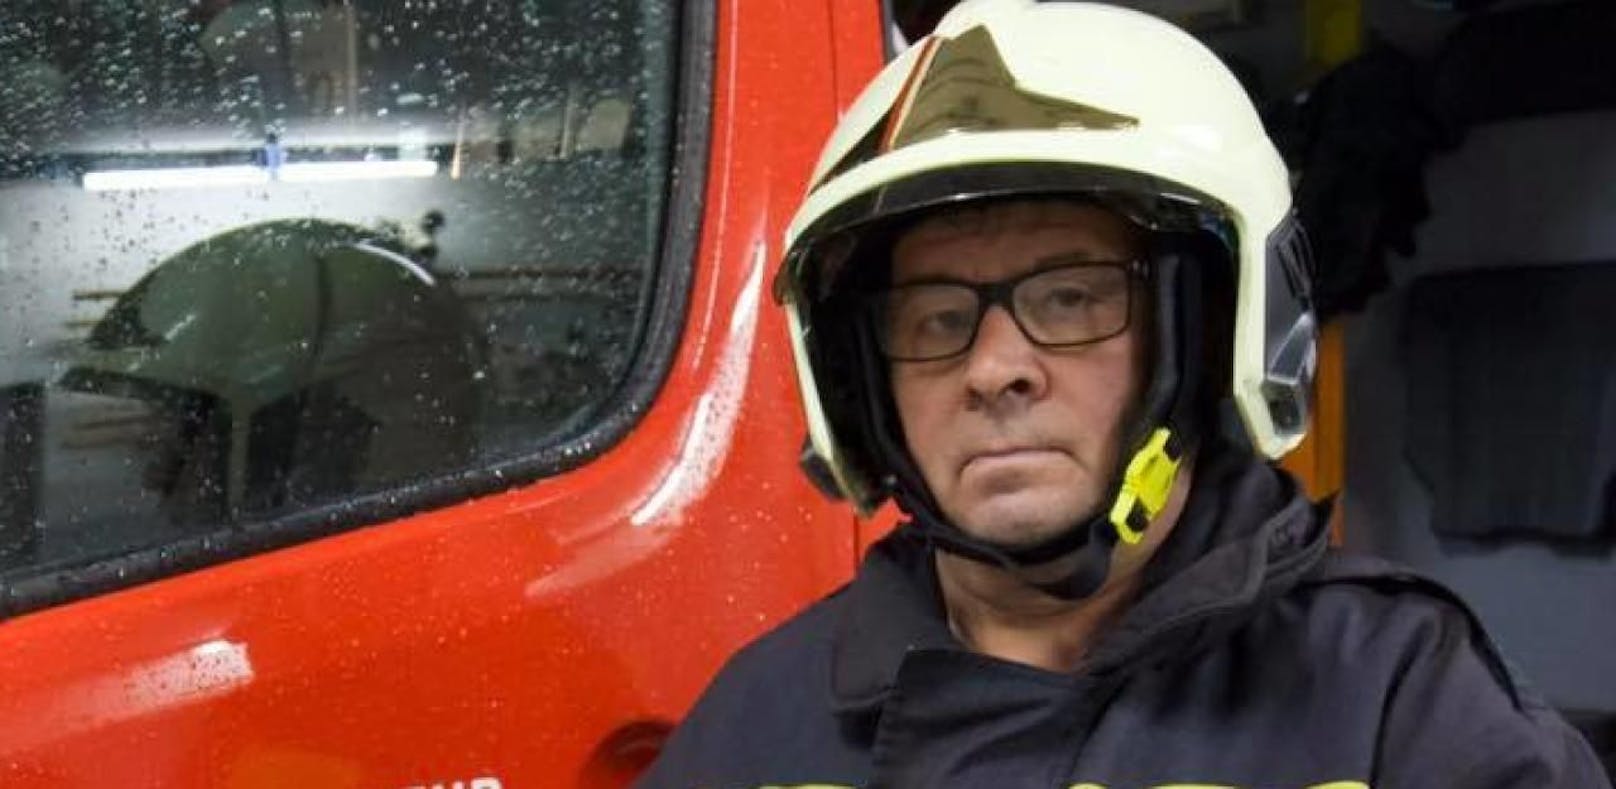 Franz startet mit 62 Jahren bei der Feuerwehr durch